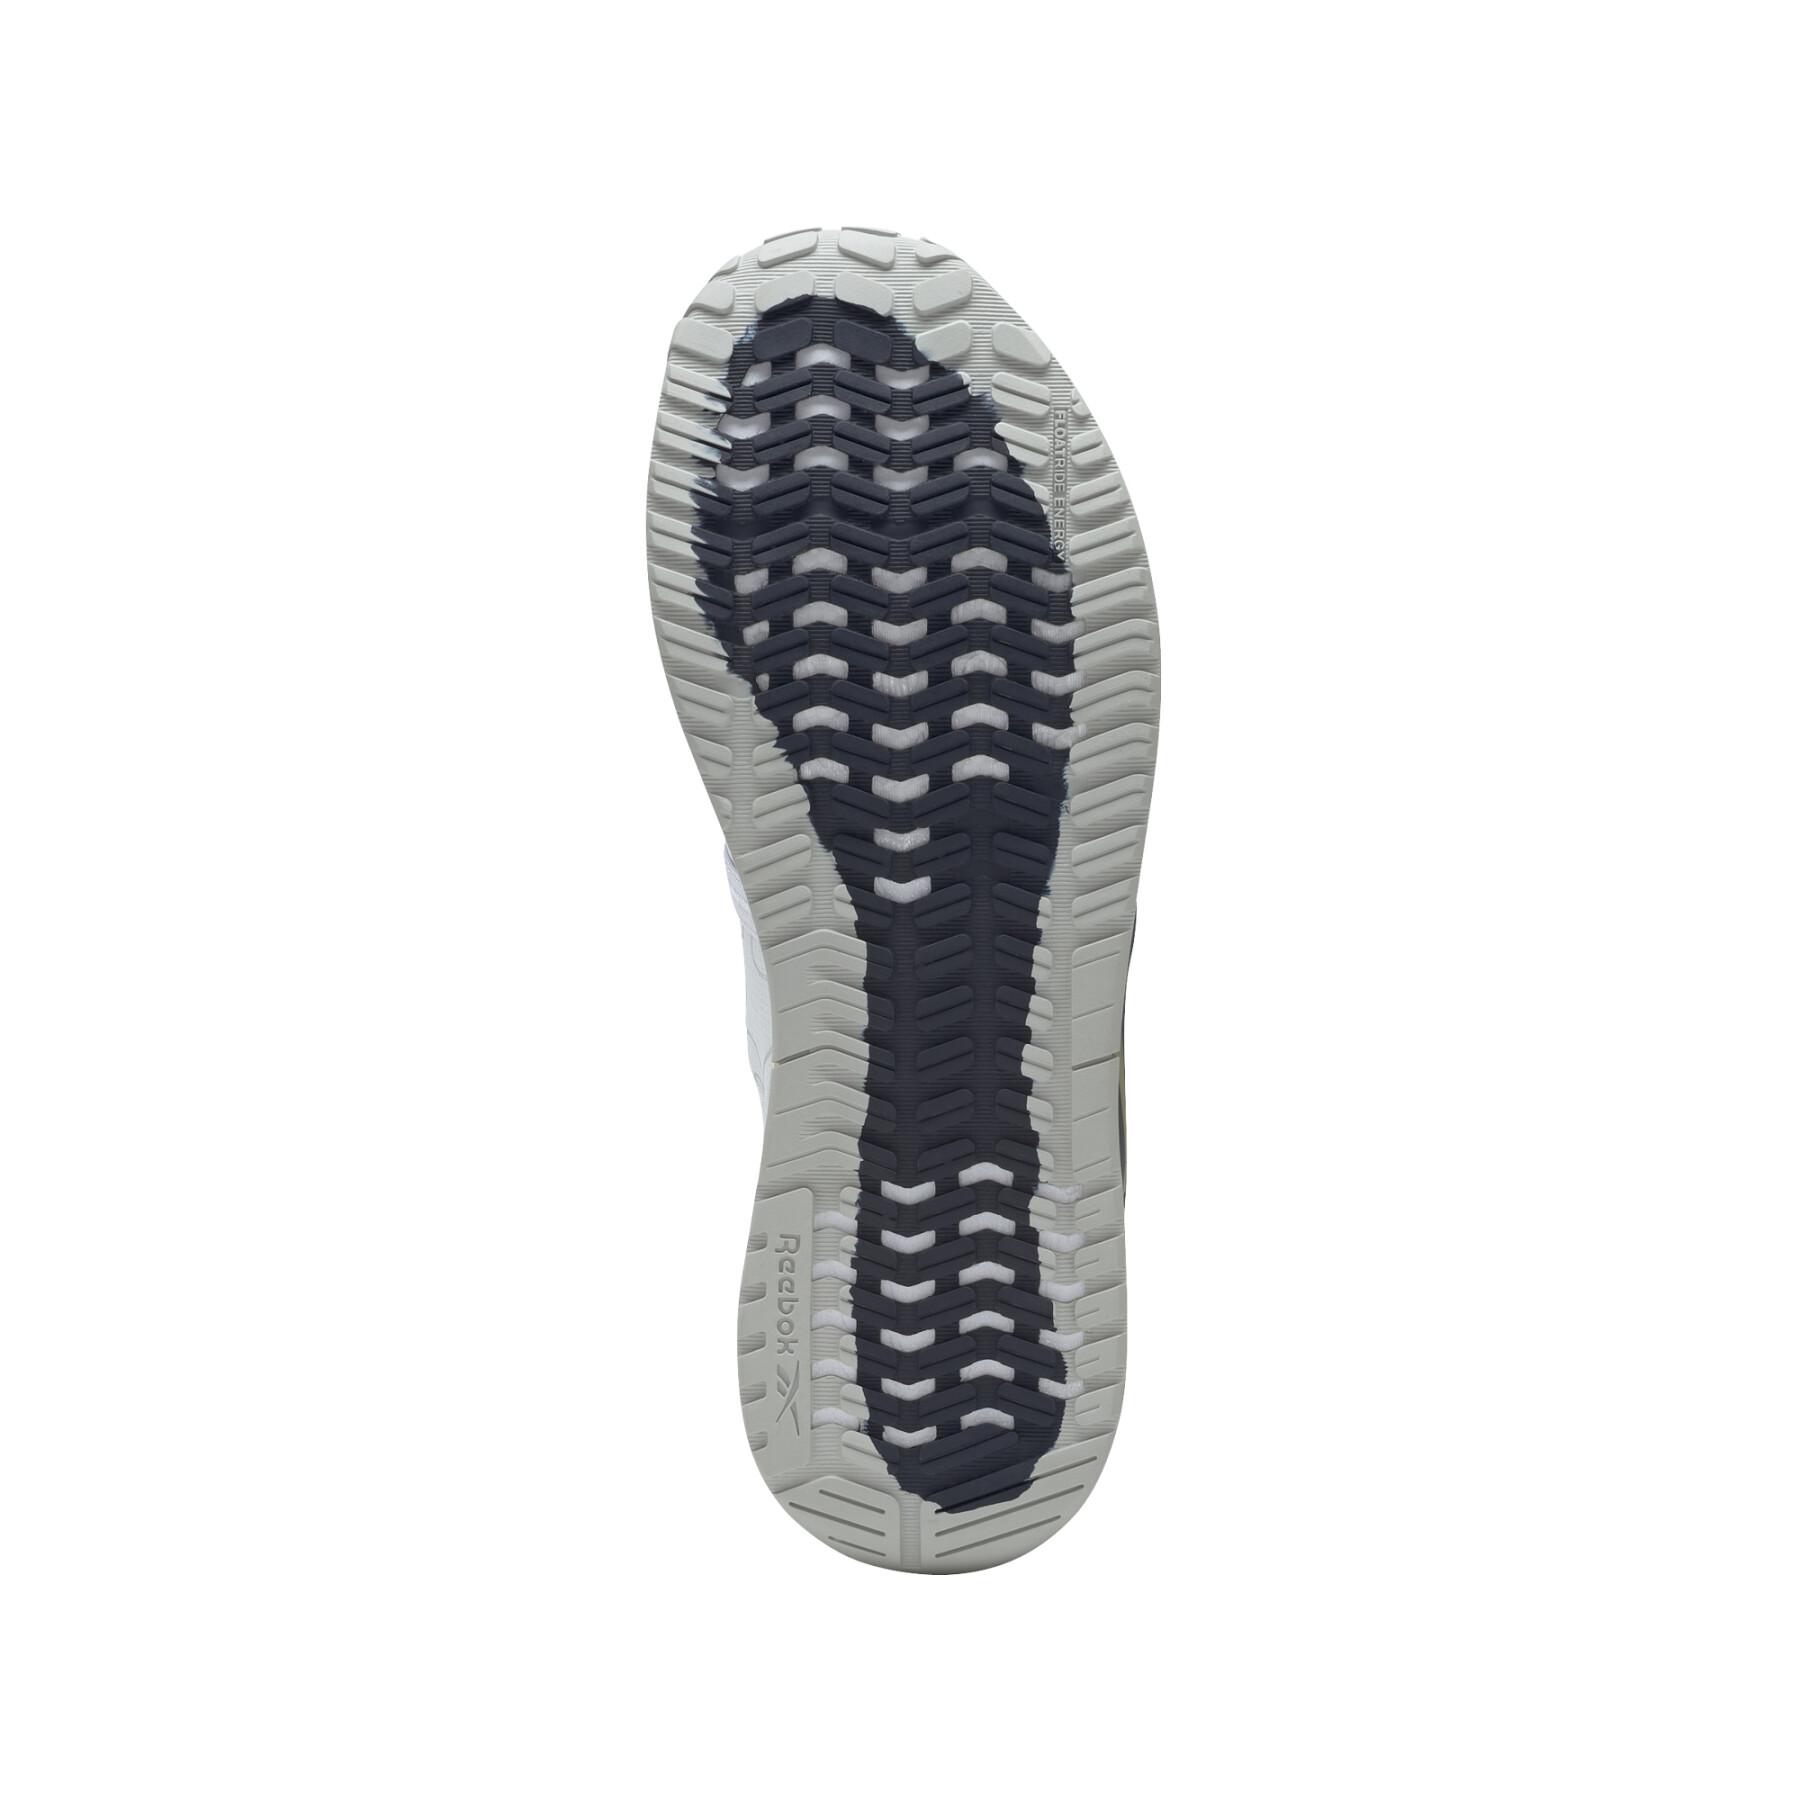 Schuhe Reebok Nano X1 Froning